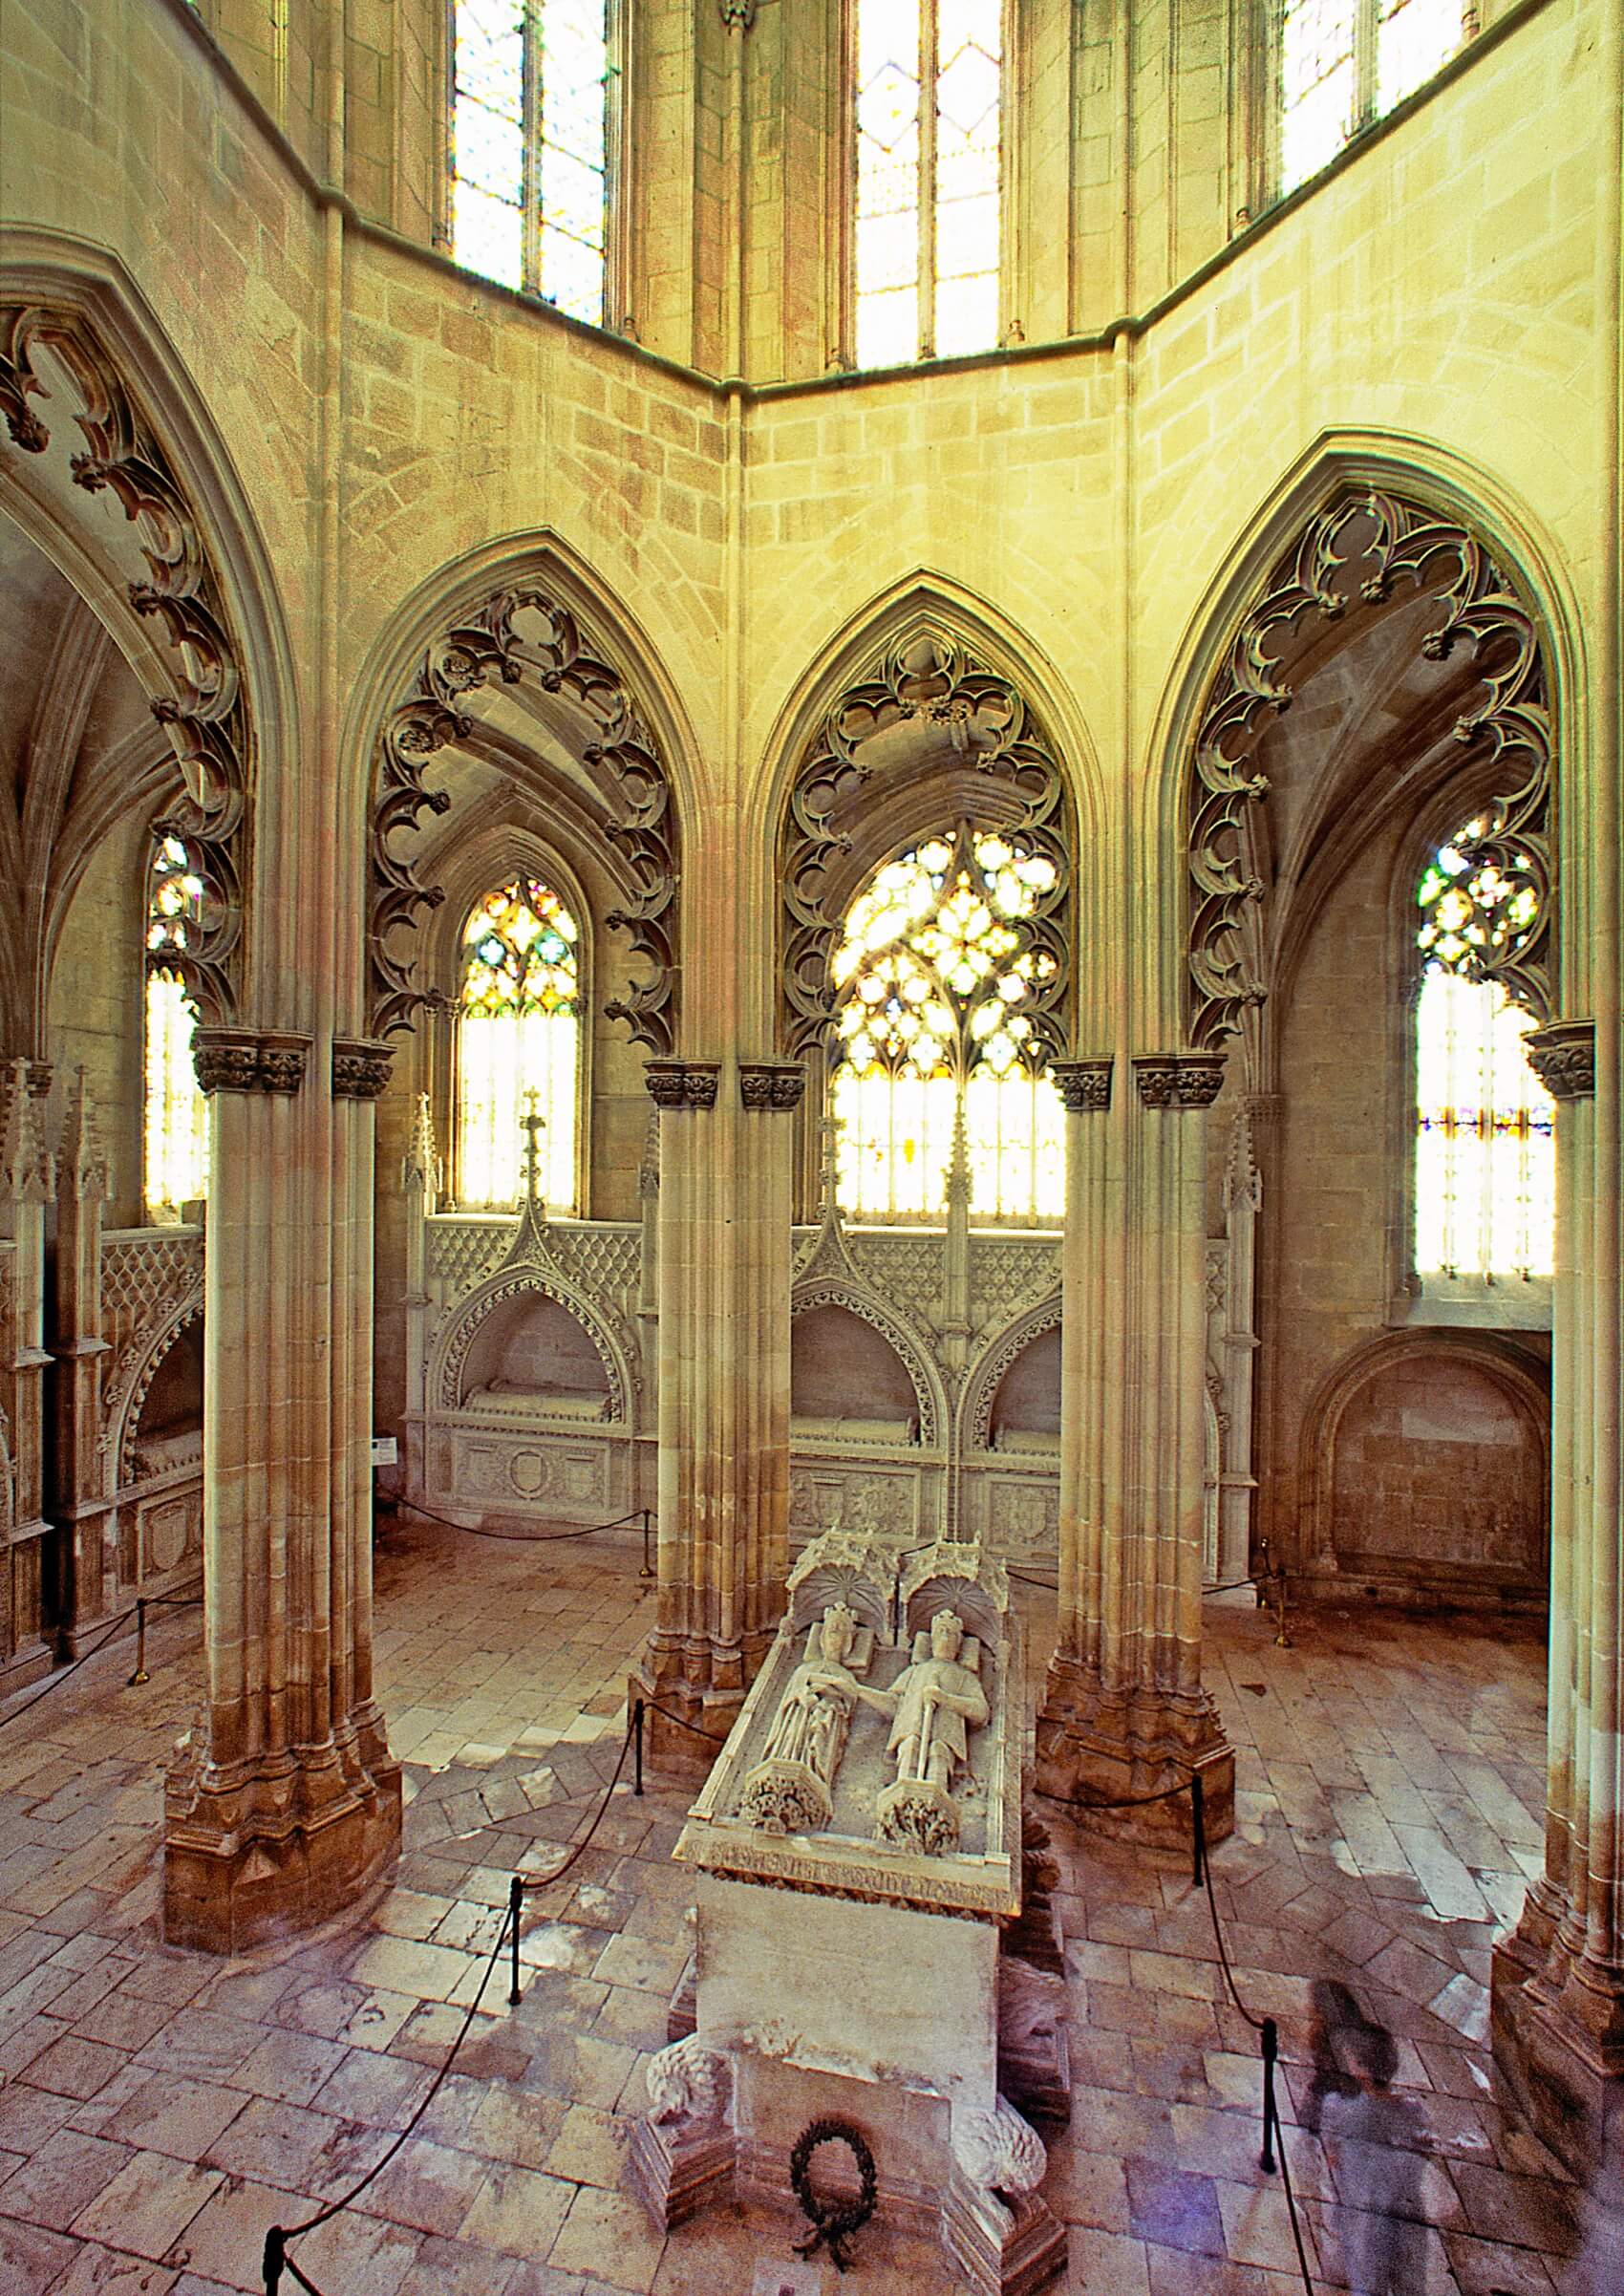 Turismo Centro de Portugal - Alcobaca Batalha Monasteries with Obidos tumulos